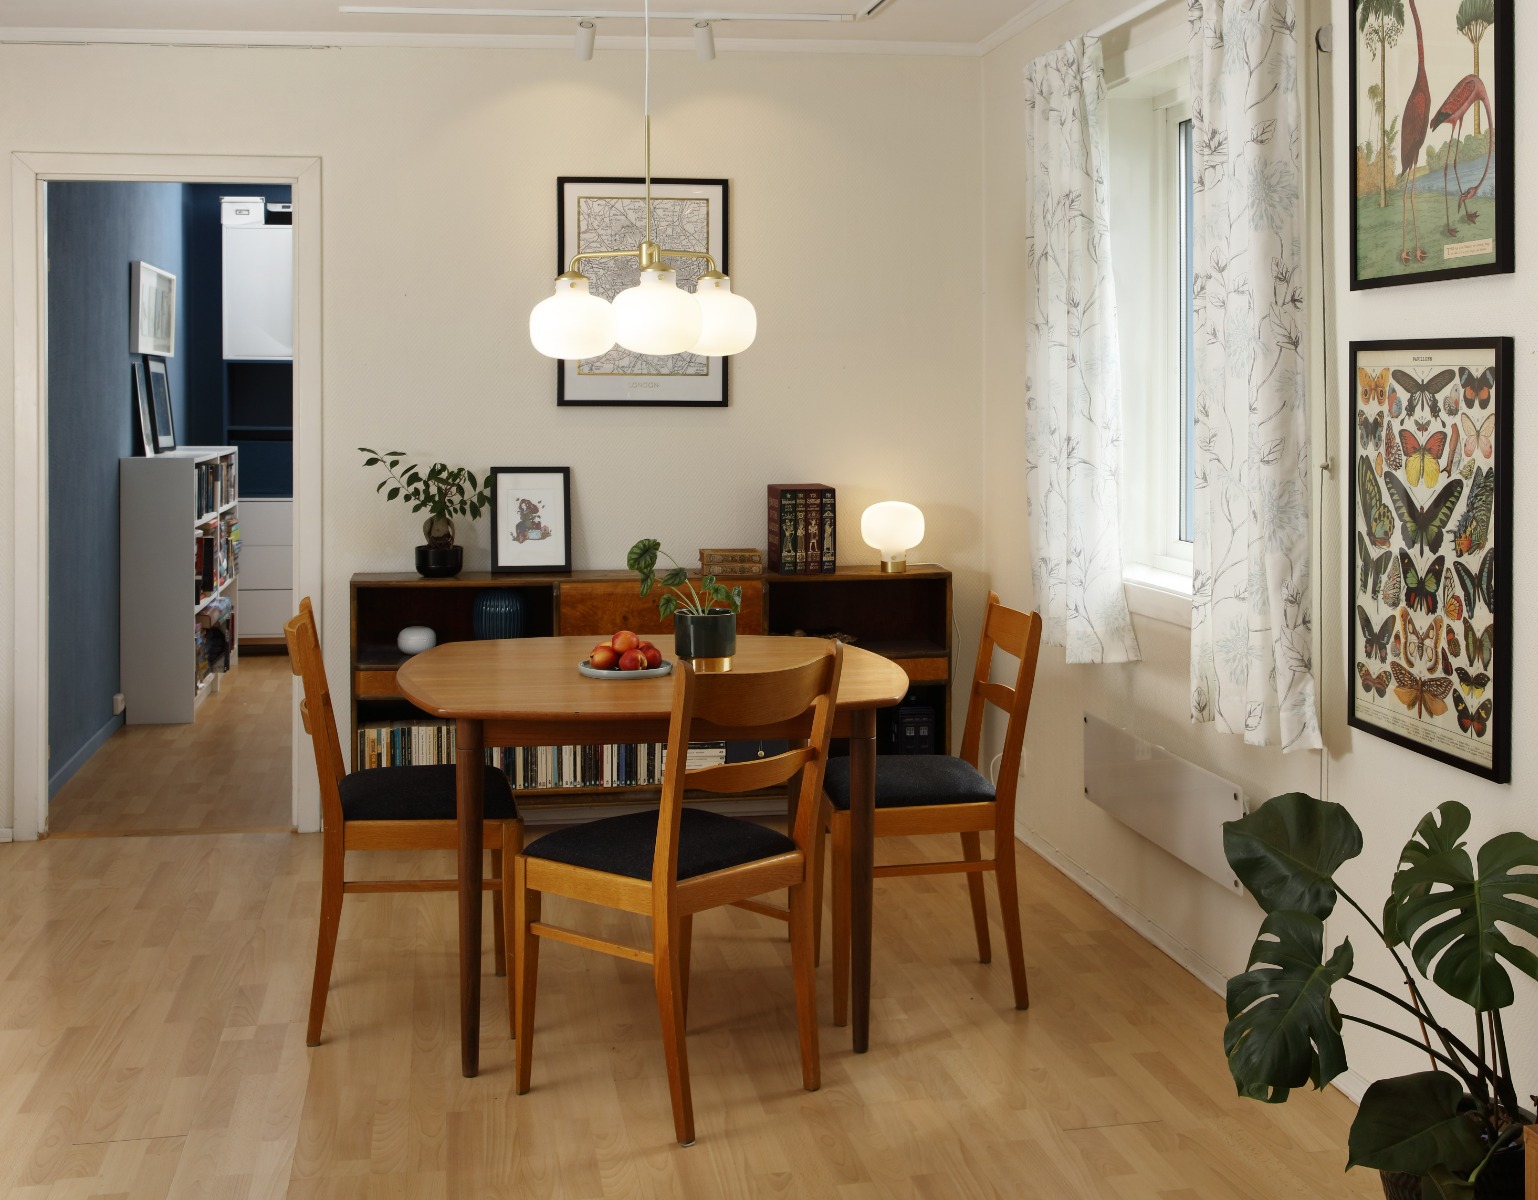 Test flere lamper i ditt hjem med visuell lampetesting